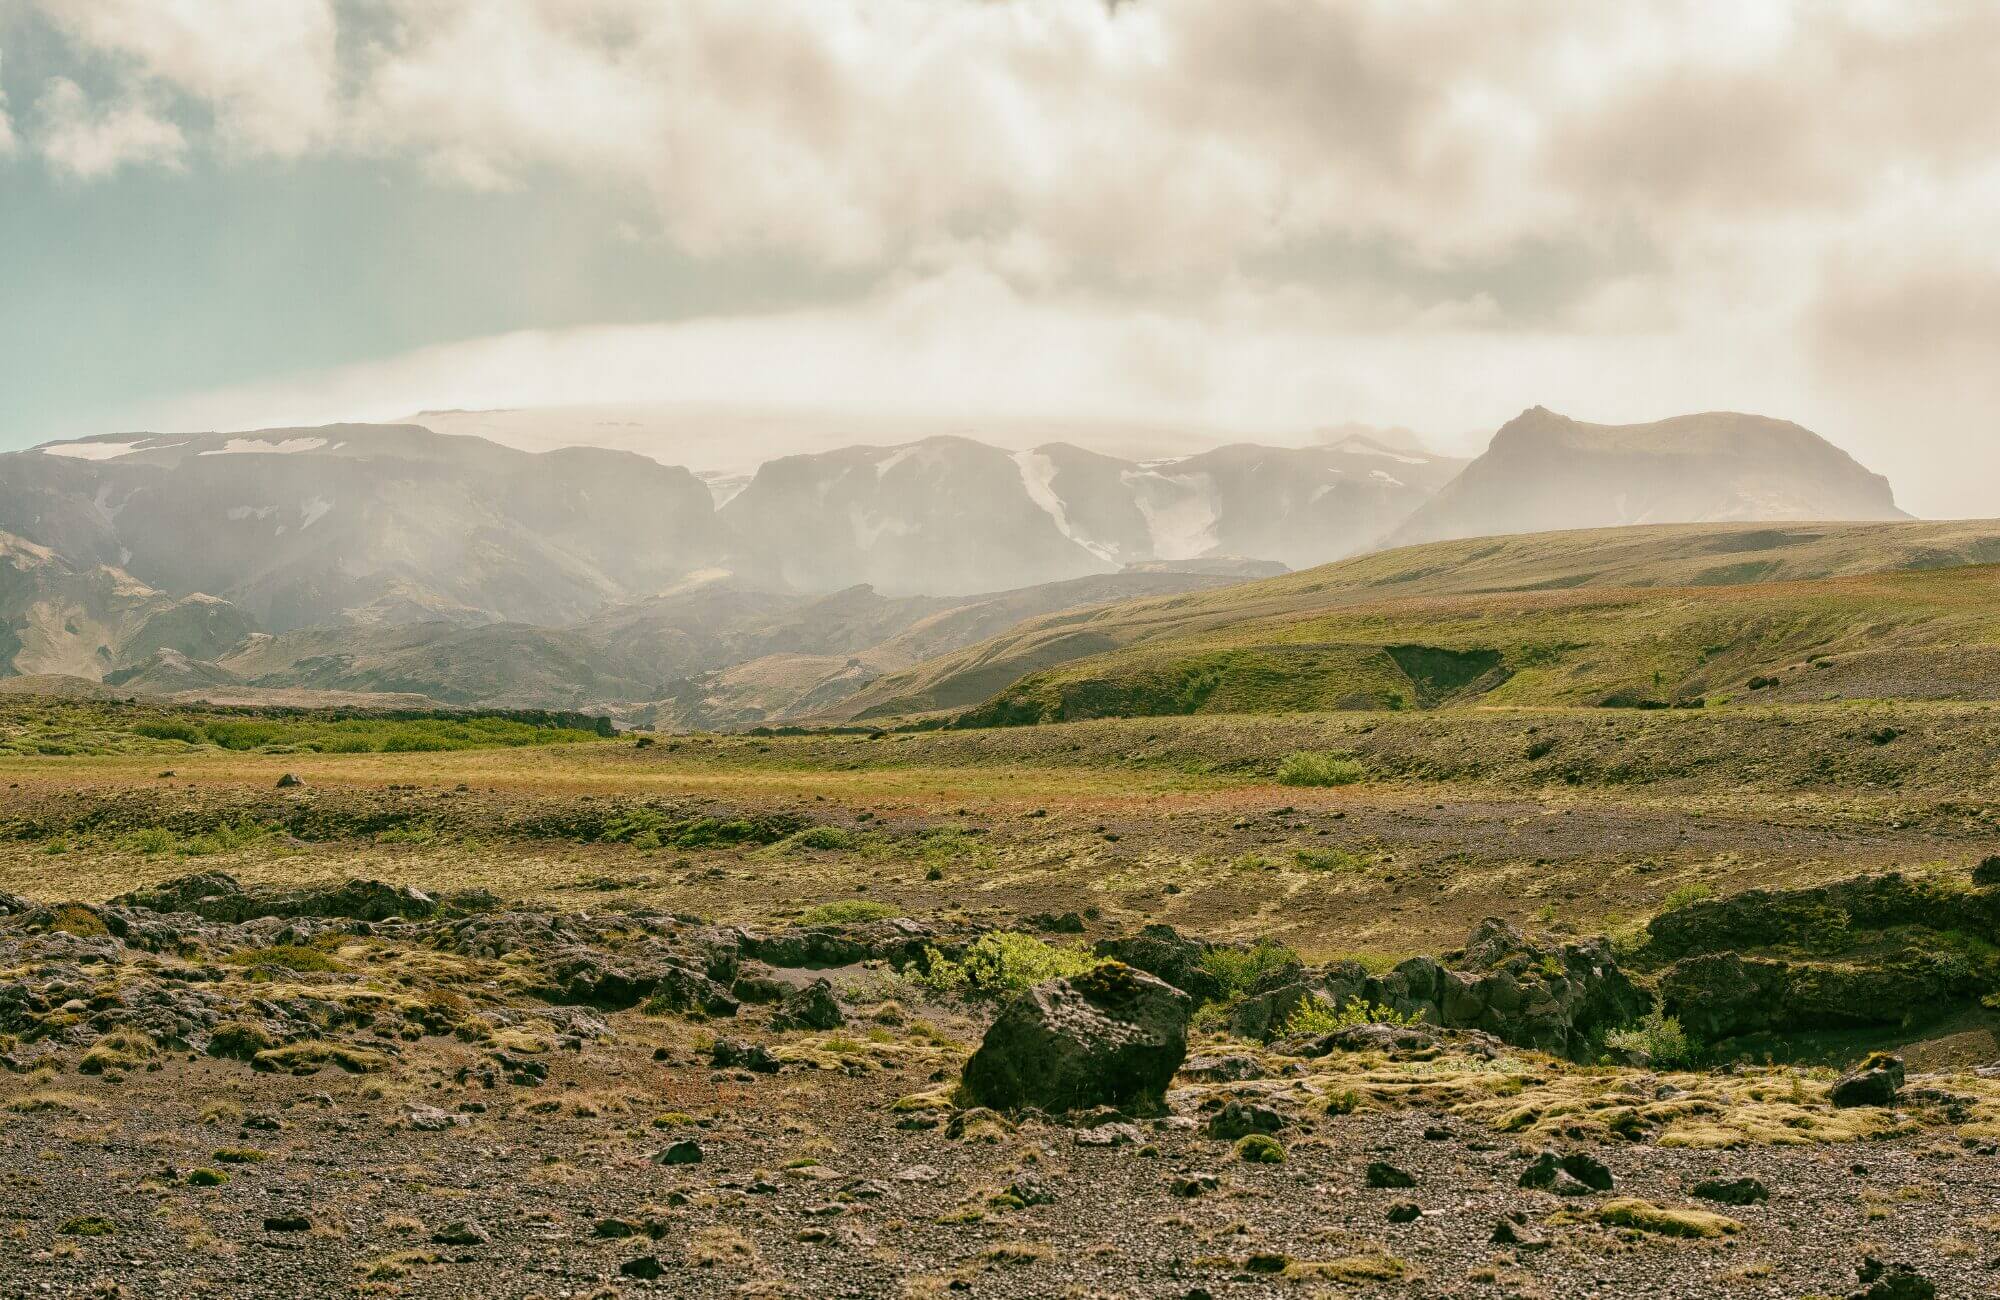 Þórsmörk er omgivet af høje fjelde har den et mildere klima end resten af det sydlige Island.